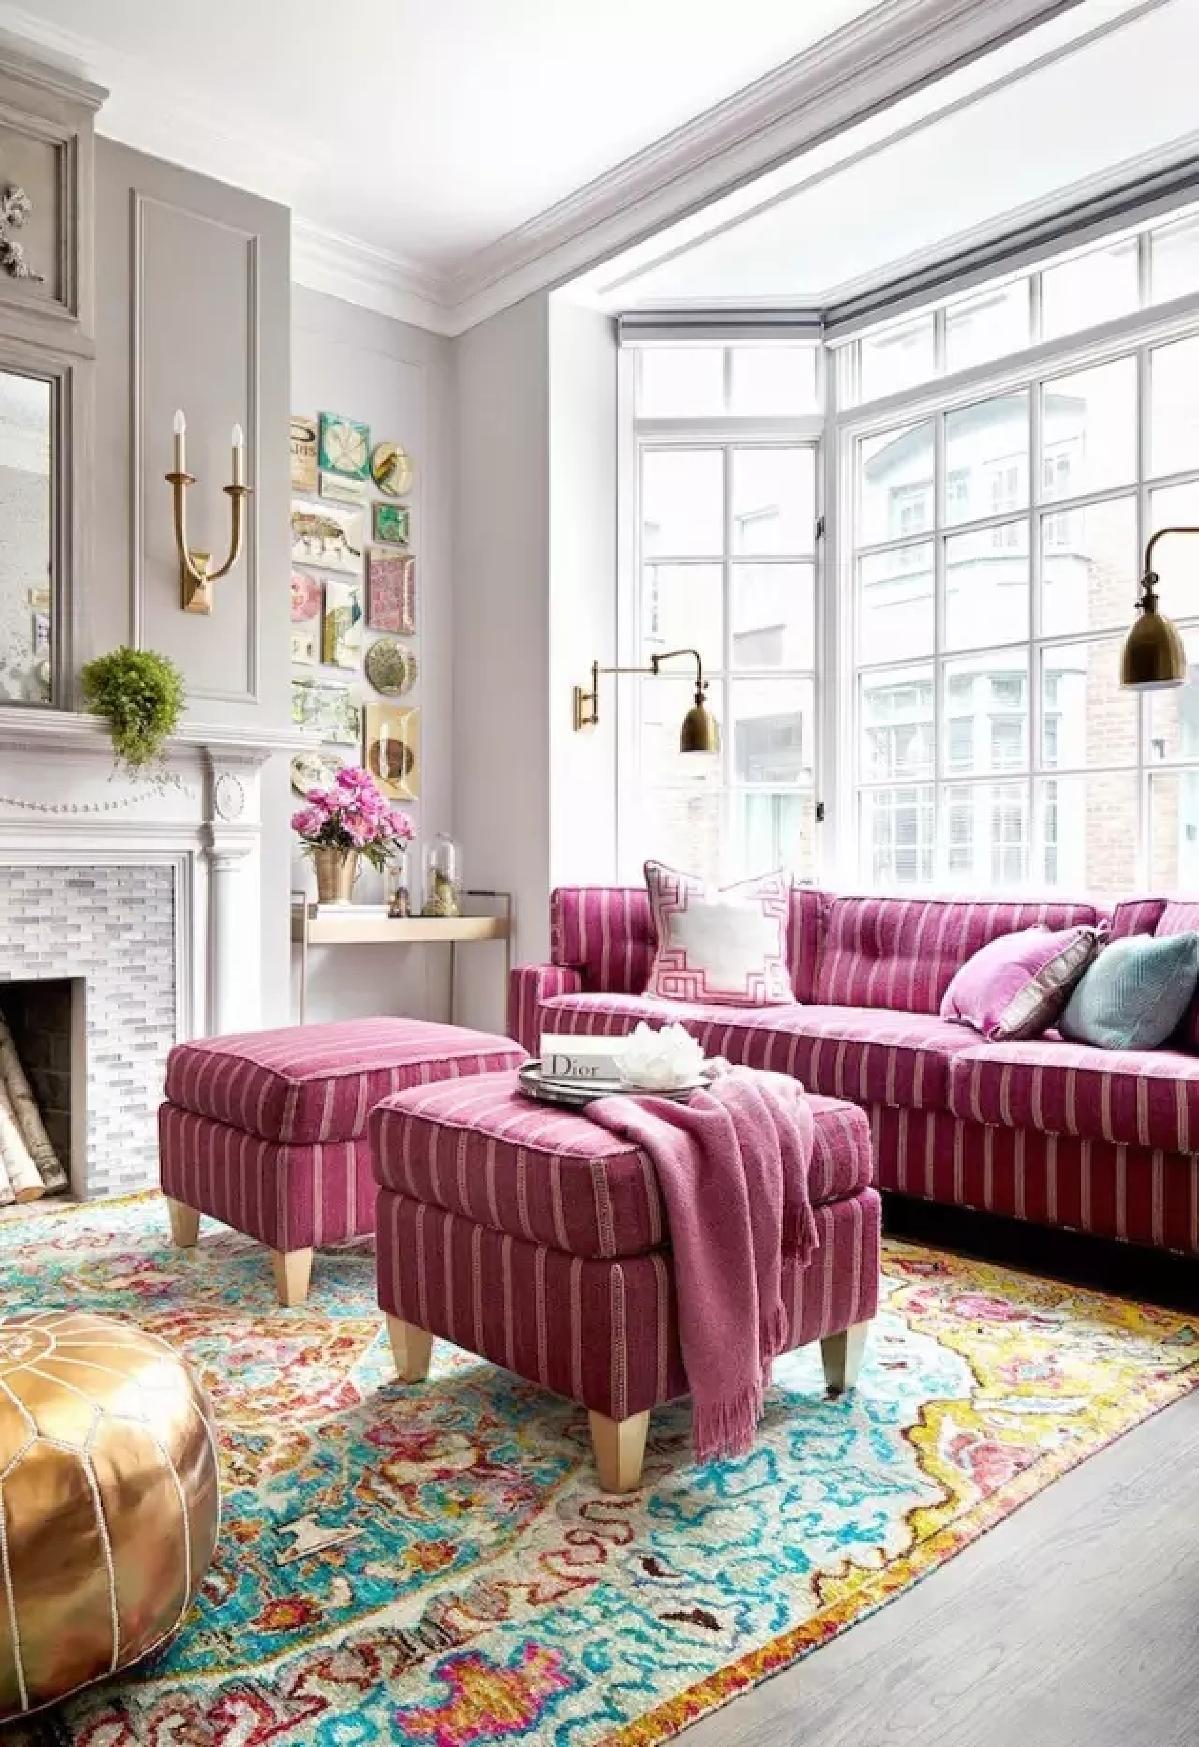 色彩艳丽的地毯搭配桃红色的沙发与金色懒人沙发,色彩的碰撞让客厅看